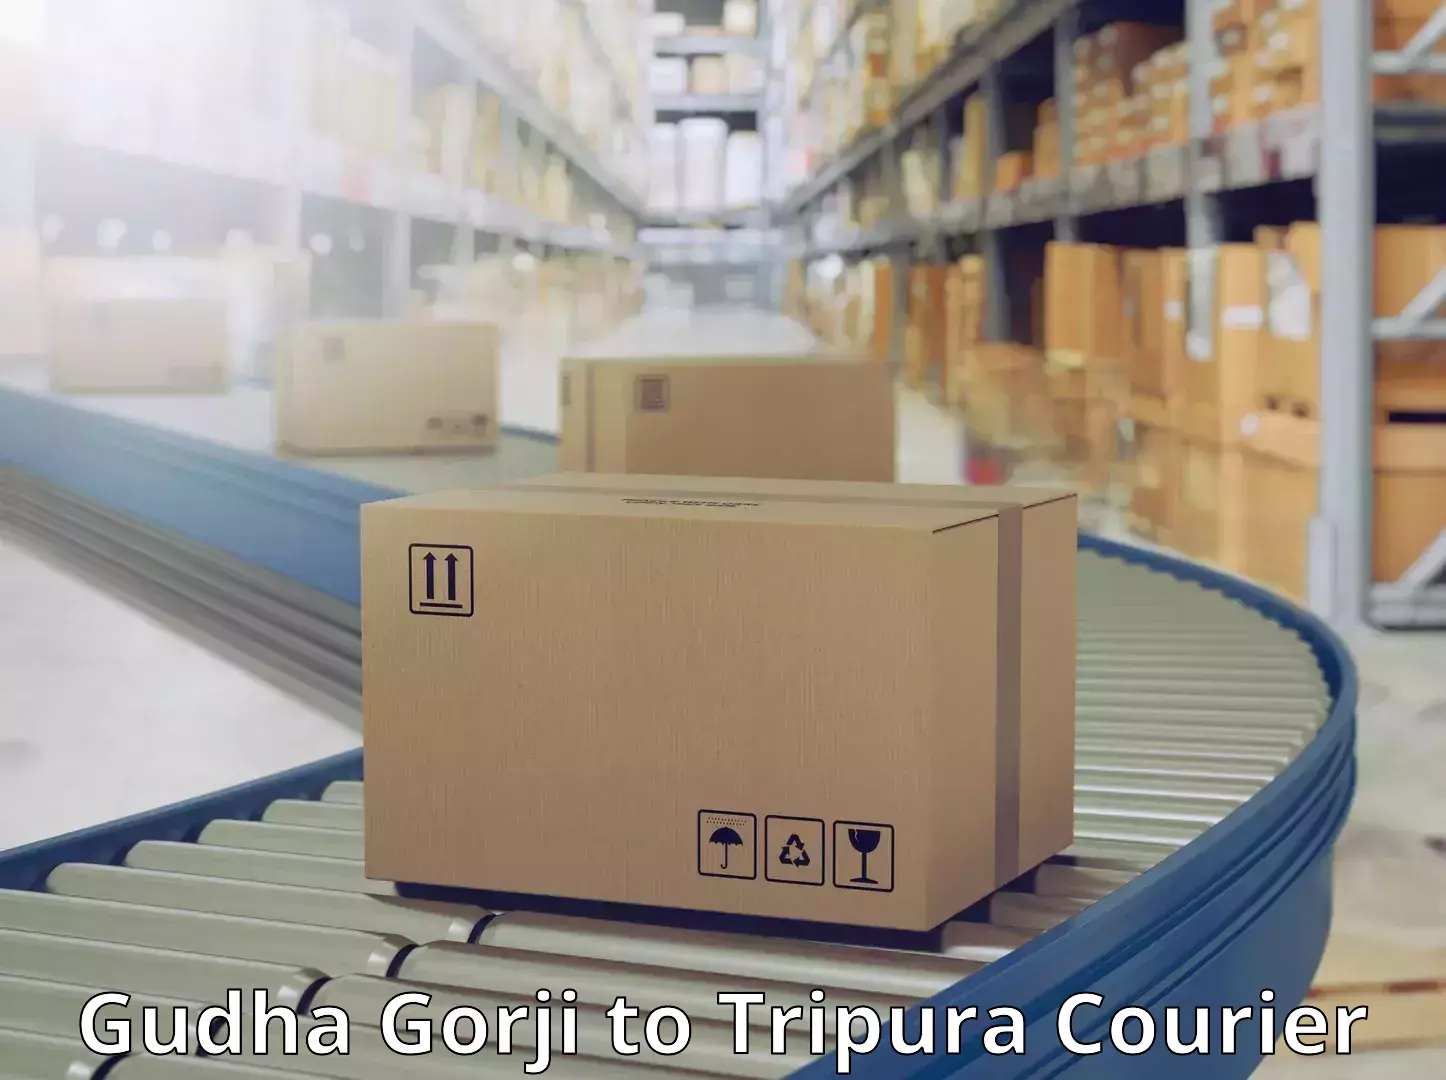 International shipping Gudha Gorji to Udaipur Tripura